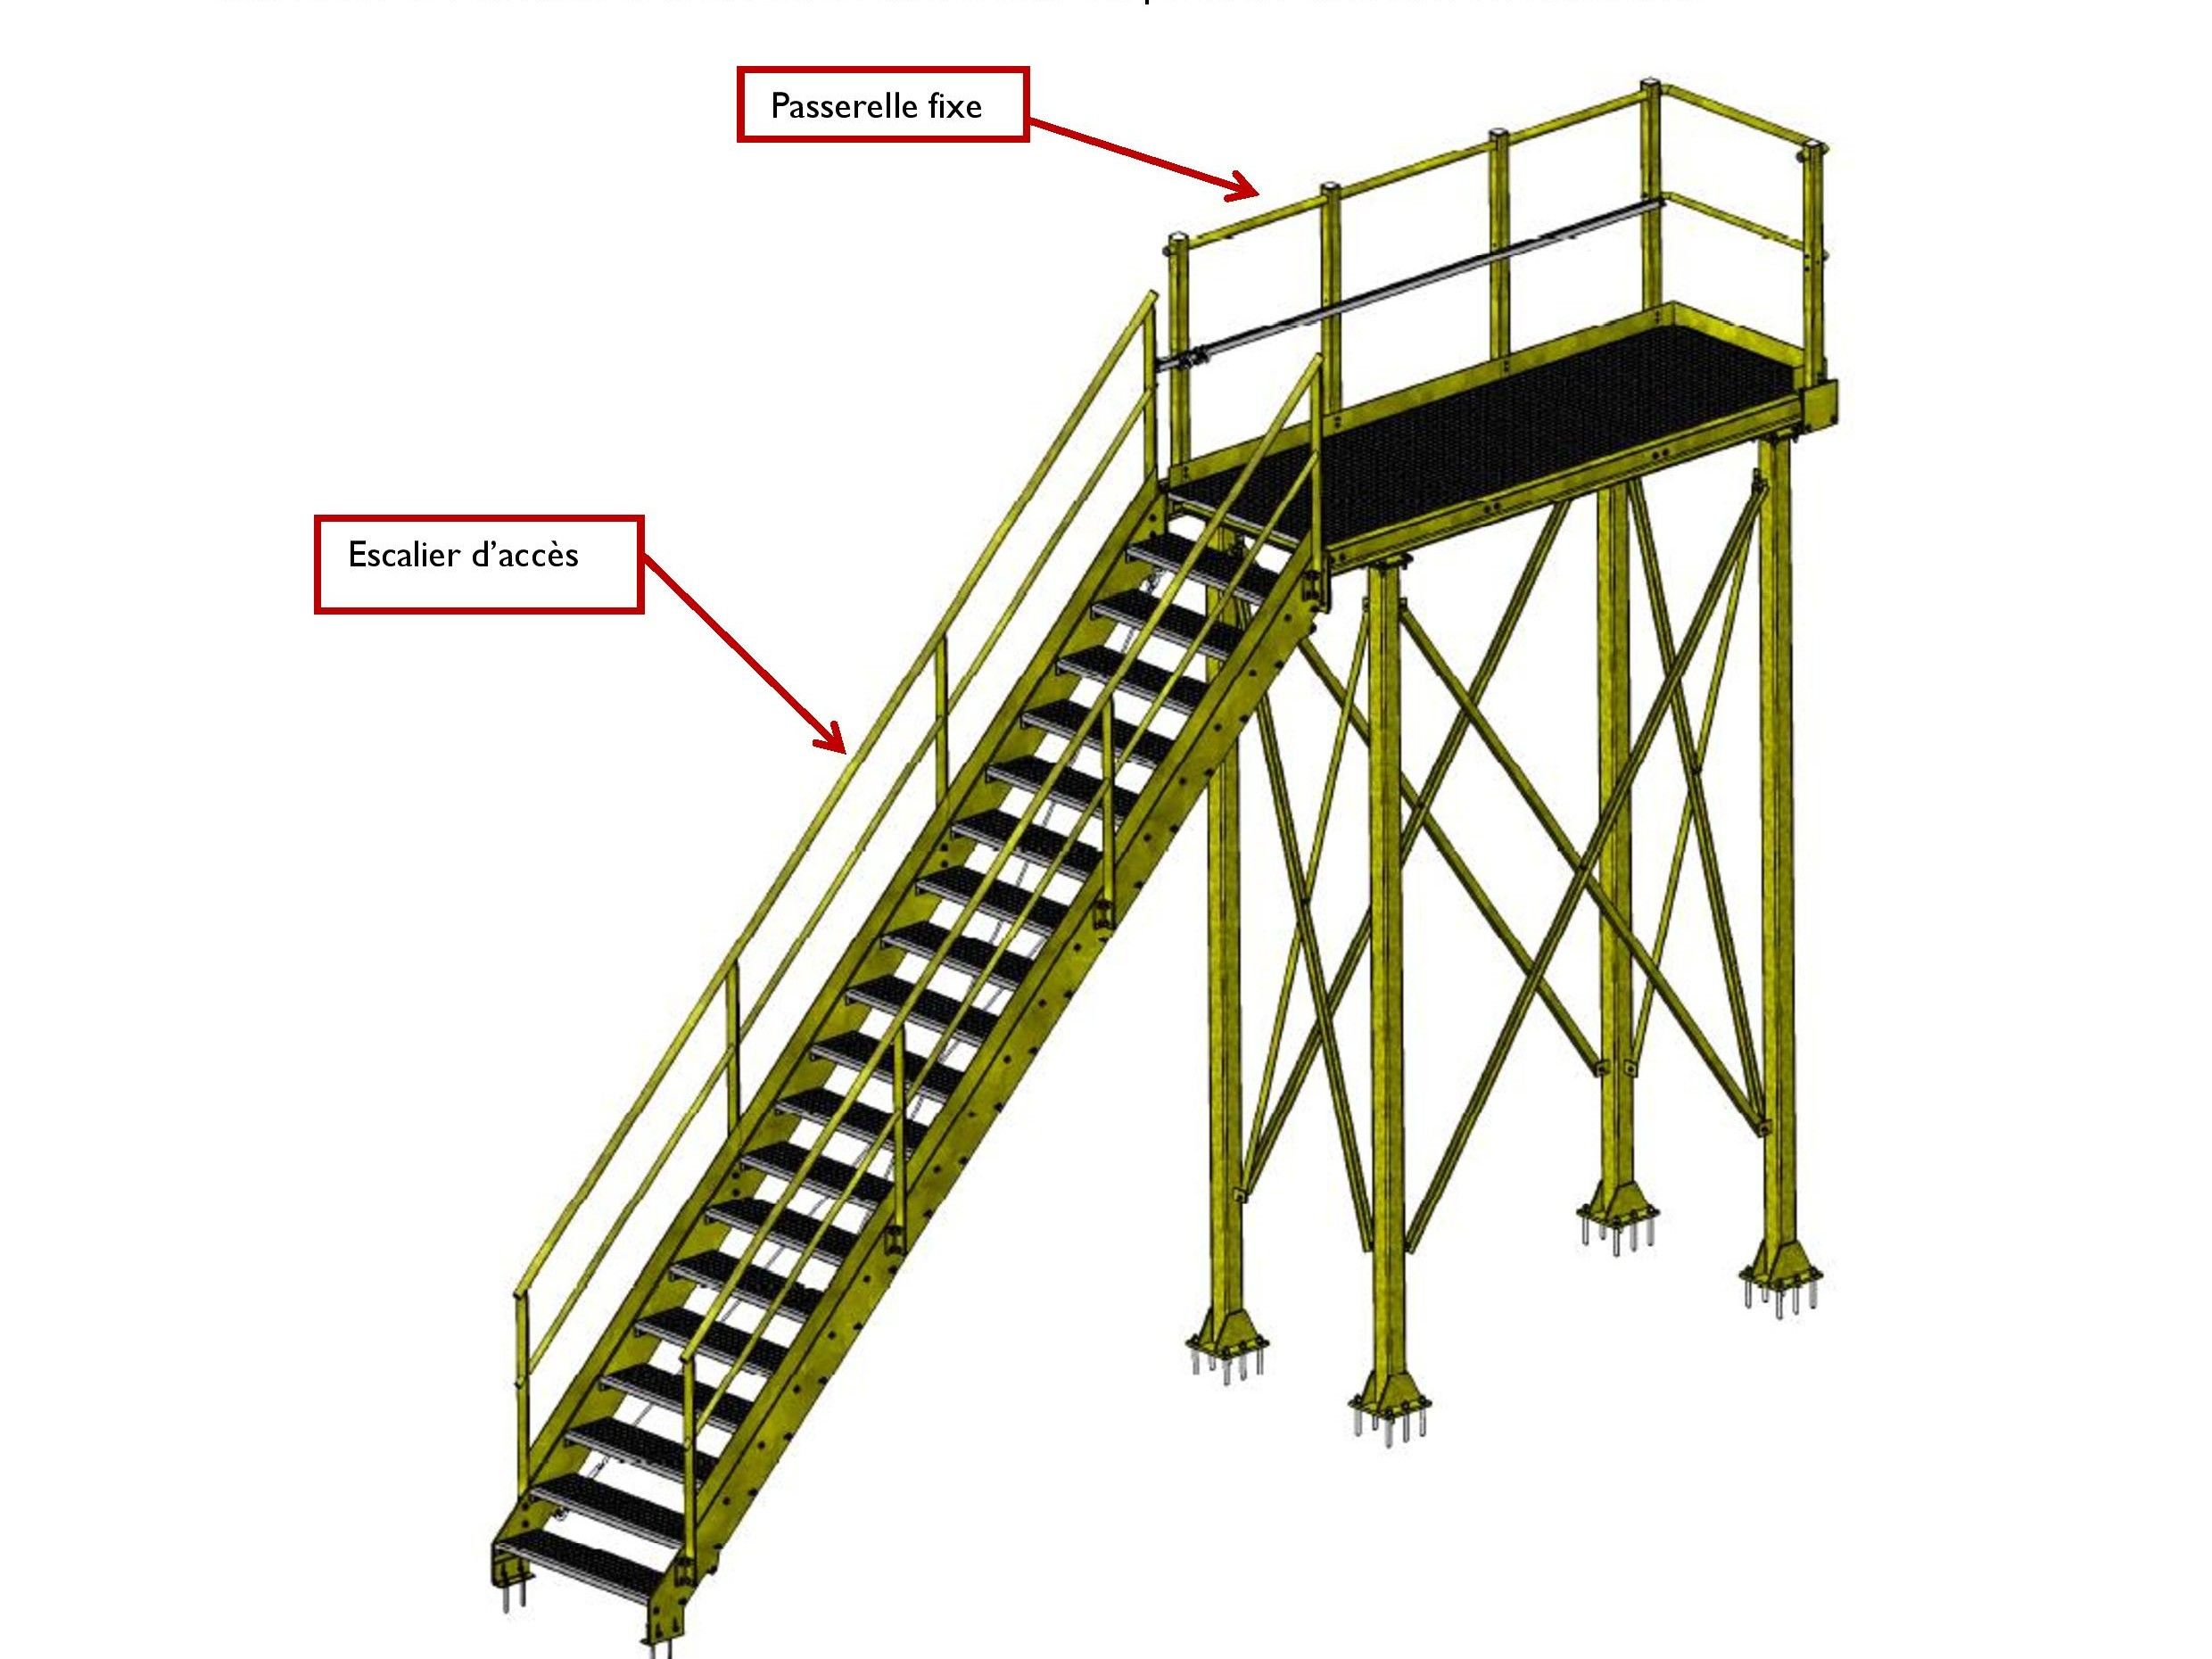 Préconisation / Modélisation d`une solution technique de type escalier métallique + passerelle métallique + ligne de vie rail antichute Technelec sur garde corps correctement dimesionné.